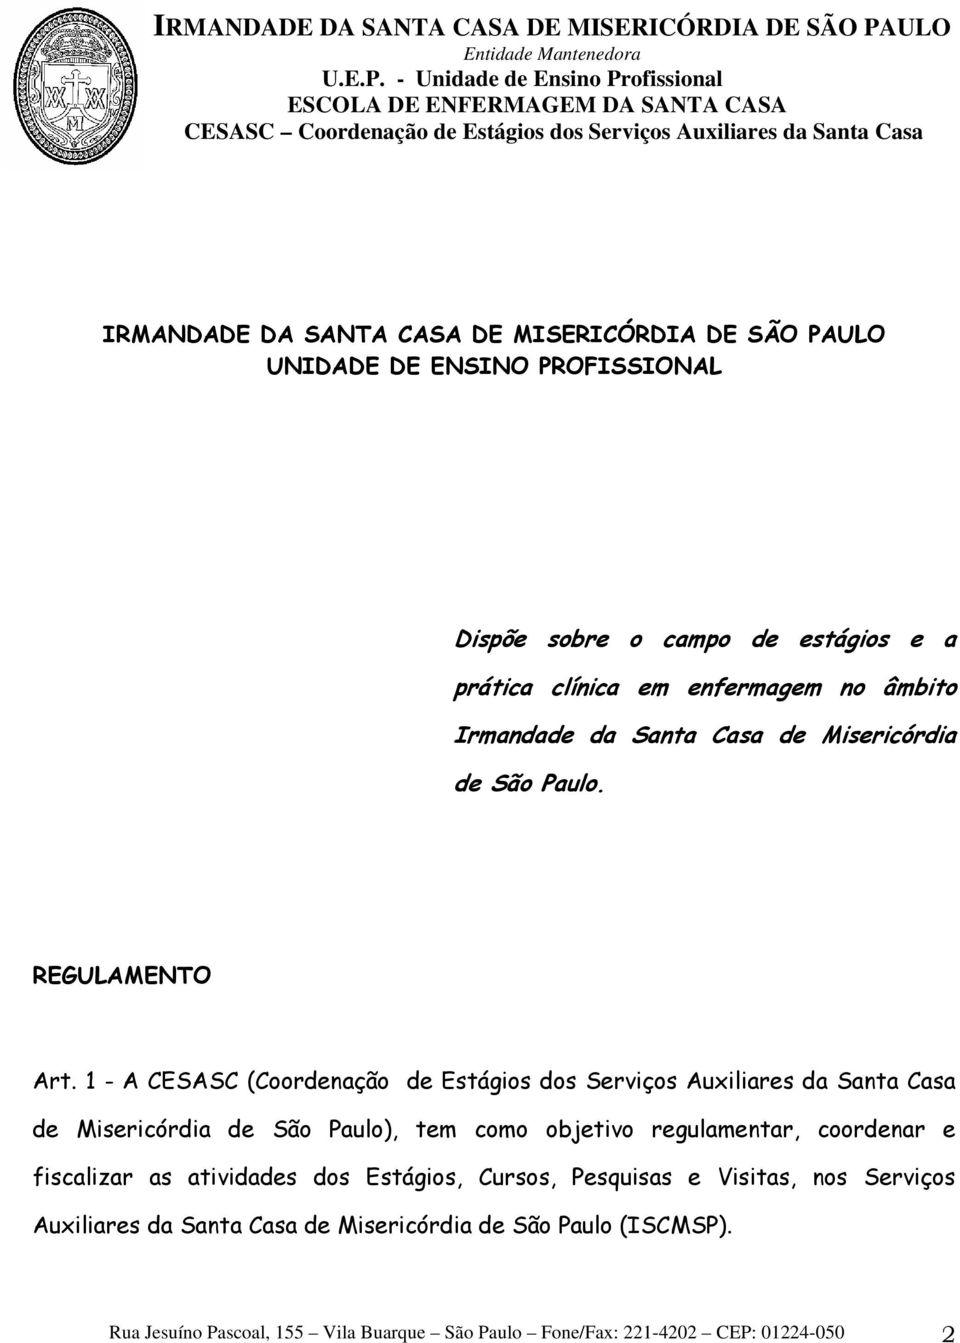 1 - A CESASC (Coordenação de Estágios dos Serviços Auxiliares da Santa Casa de Misericórdia de São Paulo), tem como objetivo regulamentar, coordenar e